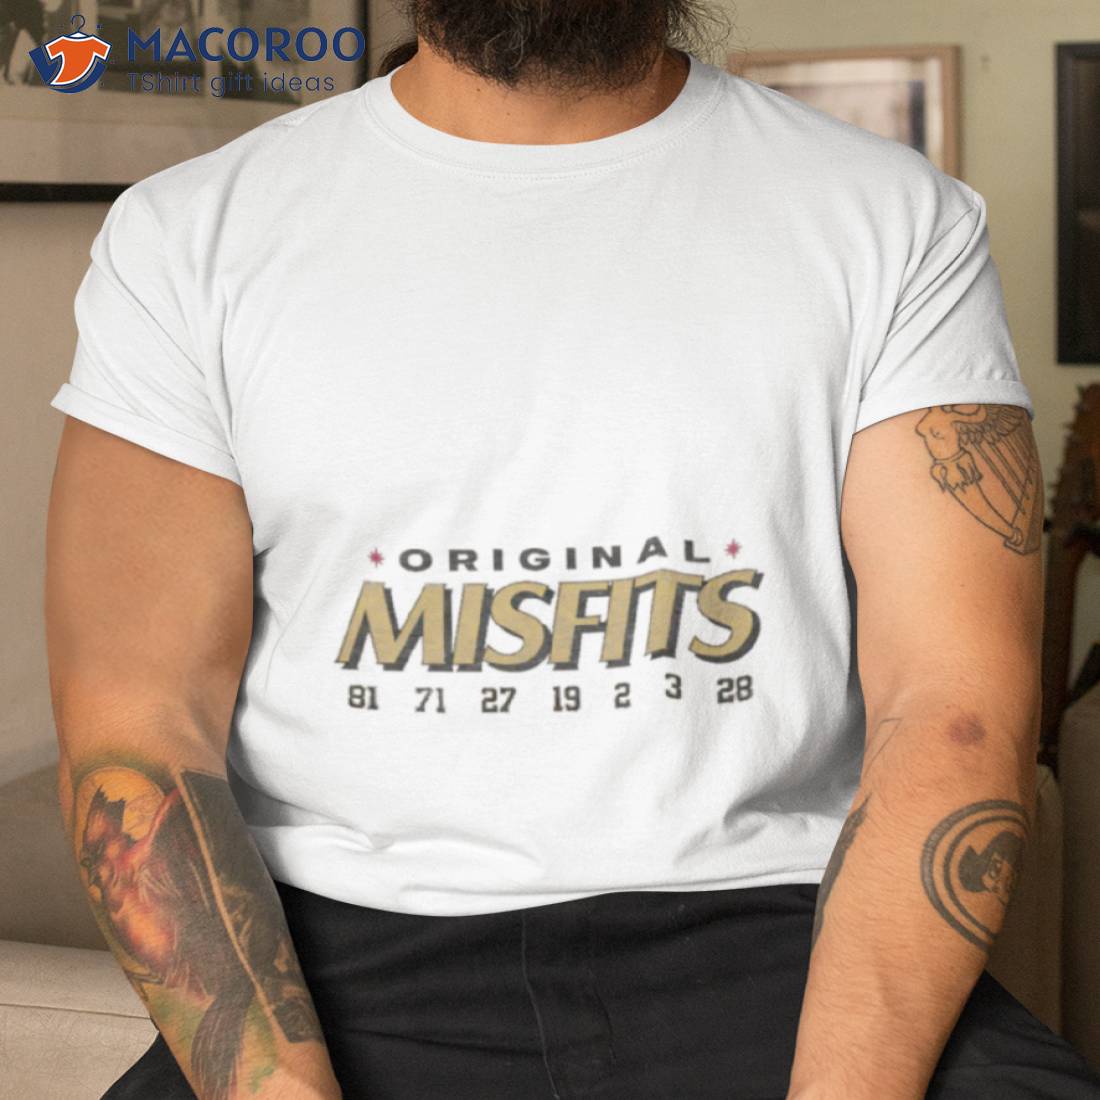 Misfits Las Vegas golden knights shirt - Kingteeshop